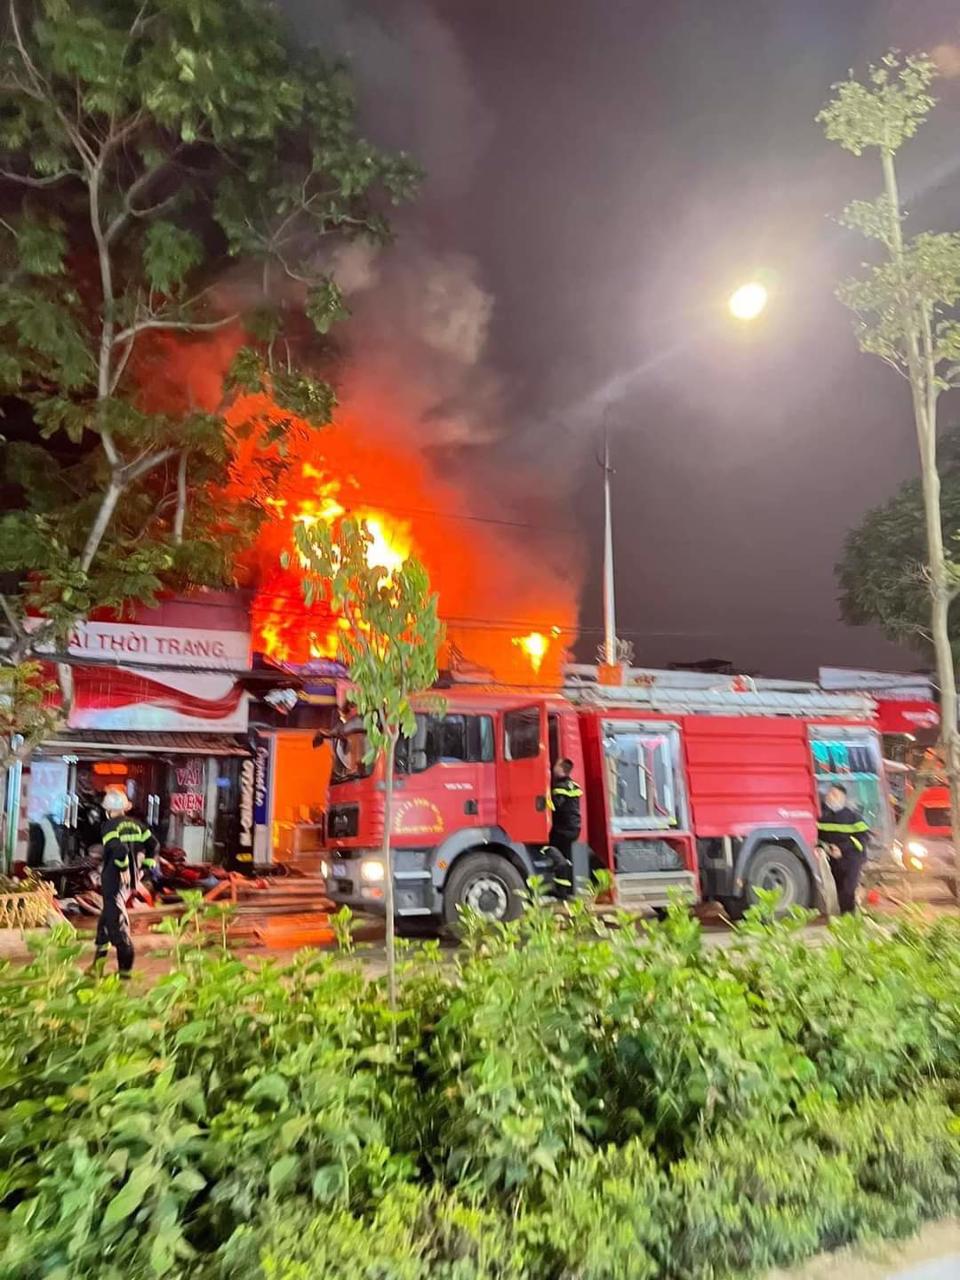 Hà Nội: Cháy ngùn ngụt cửa hàng ăn ở dãy nhà tạm, khói đen bốc lên hàng chục mét  - Ảnh 1